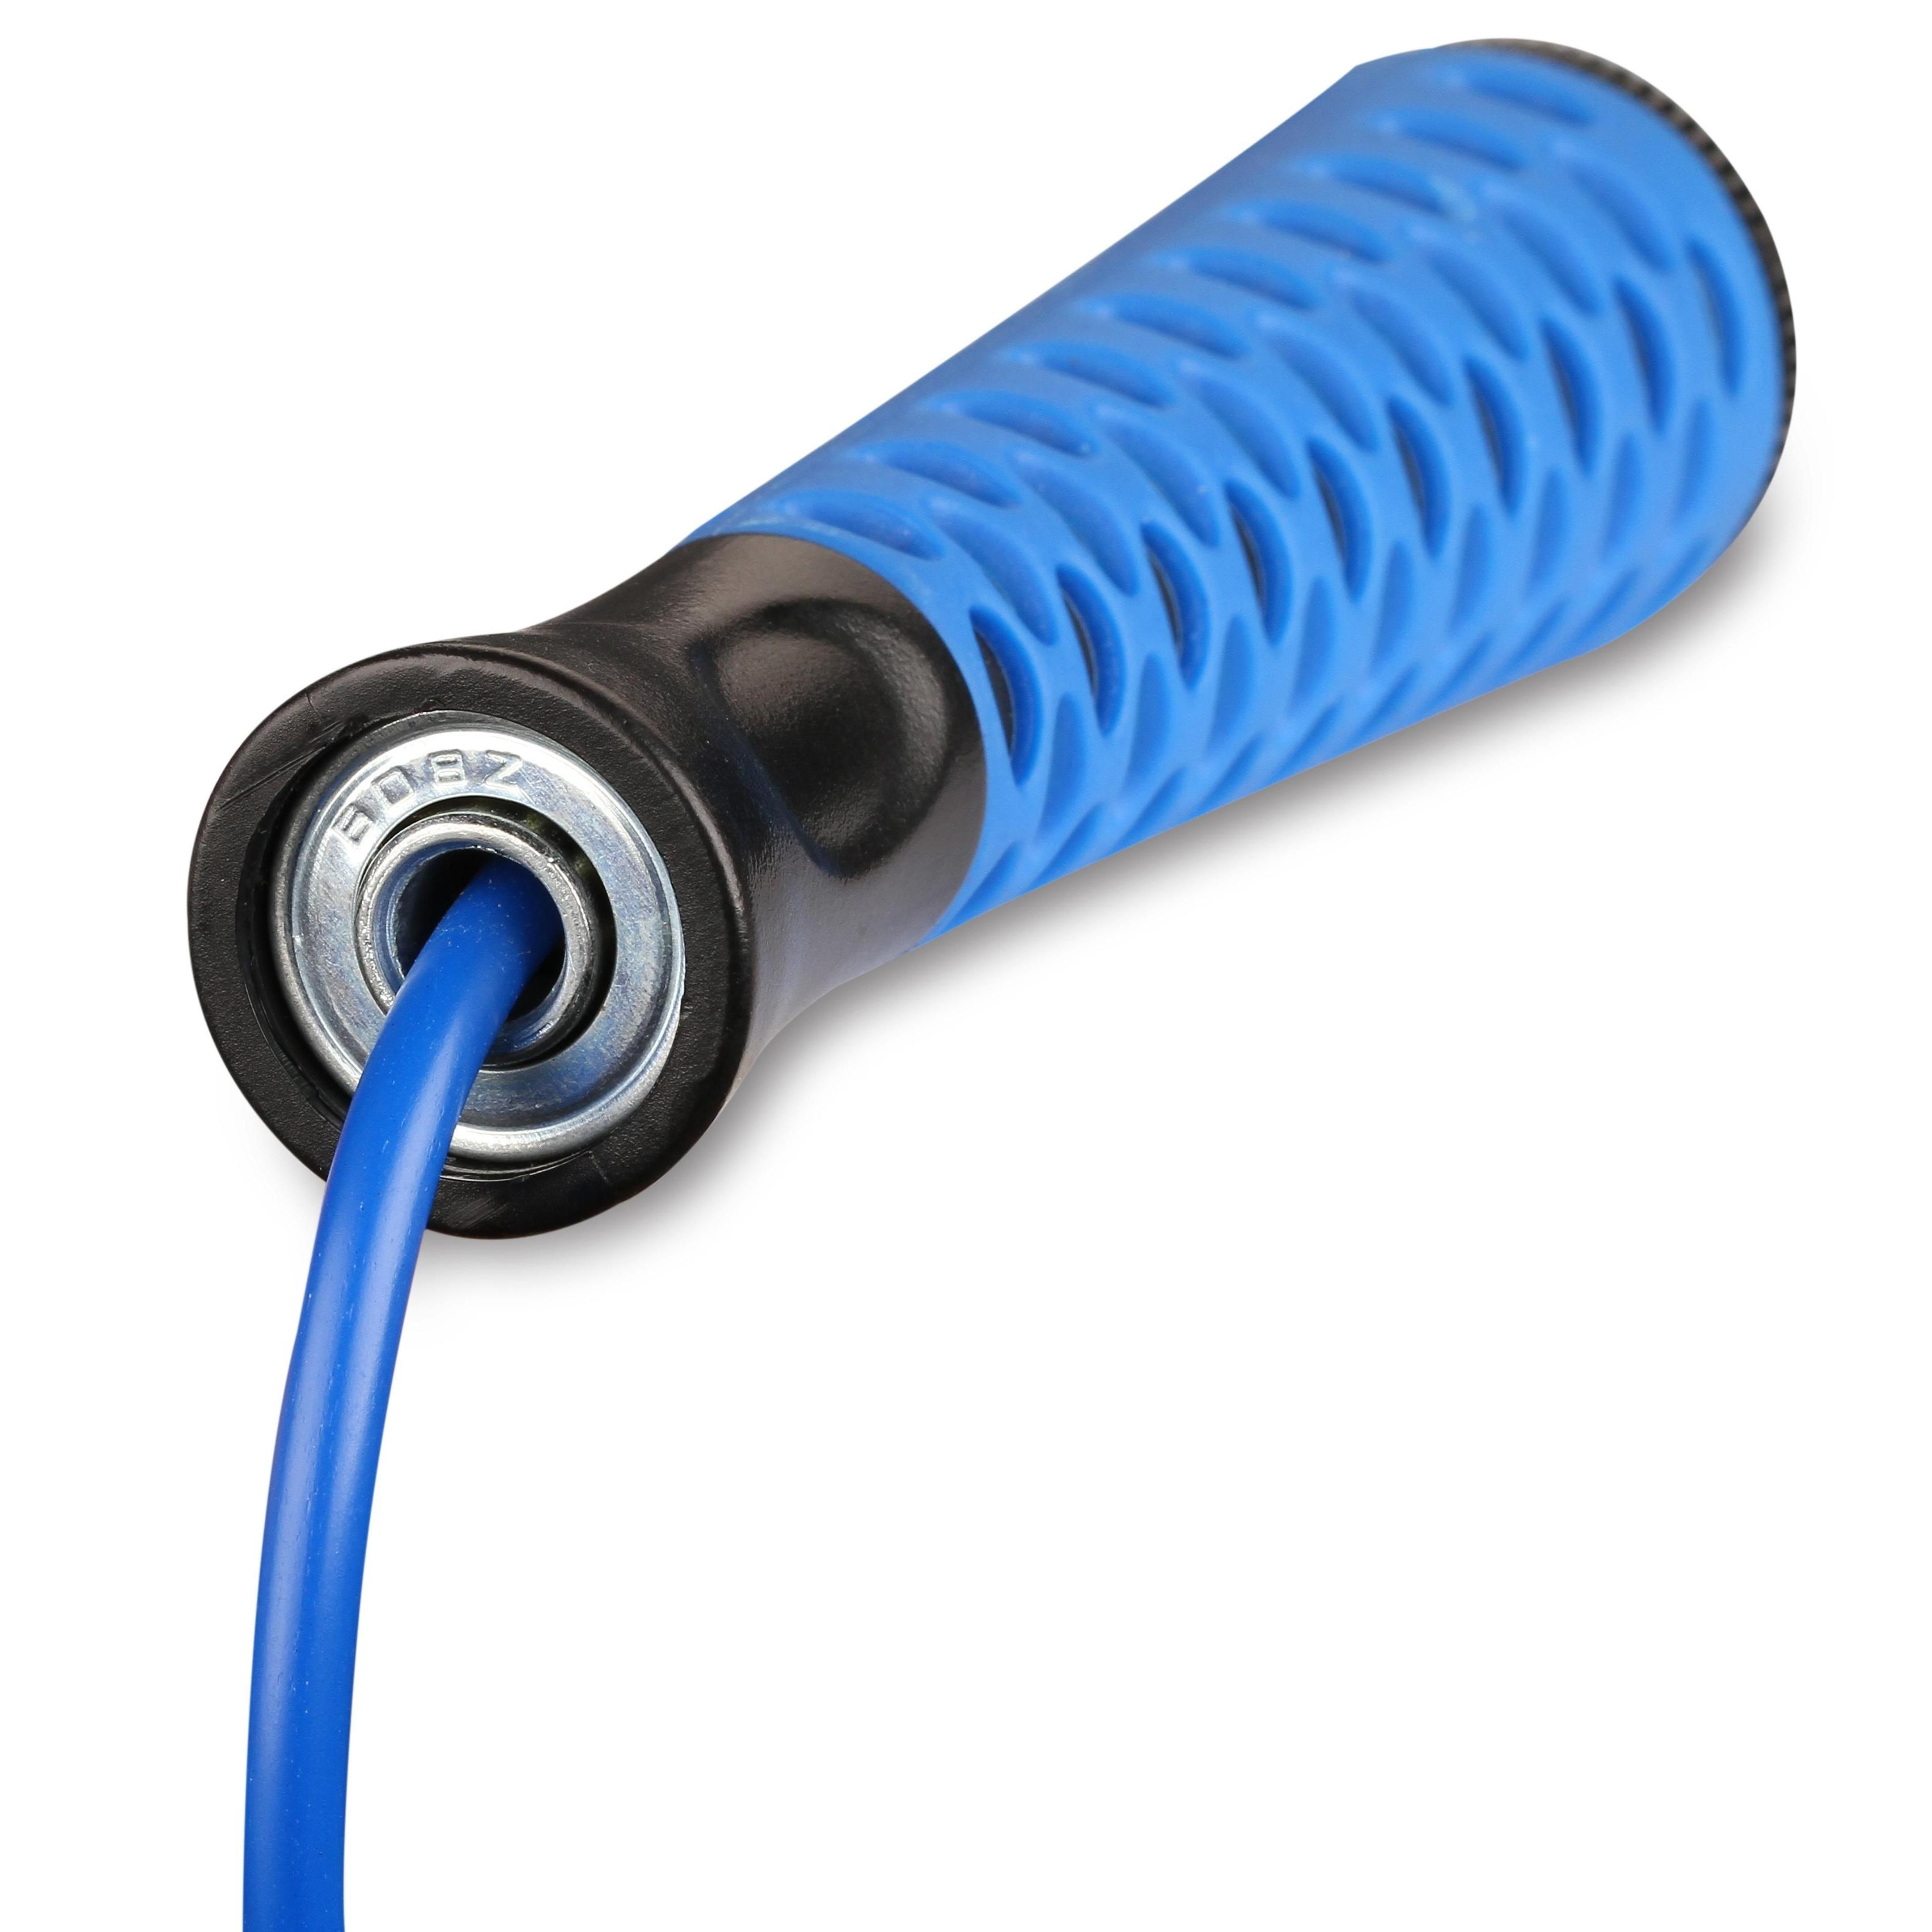 Comba de PVC con Asas de Plástico Cordón Longitud Ajustable INDIGO  2,75 m Azul